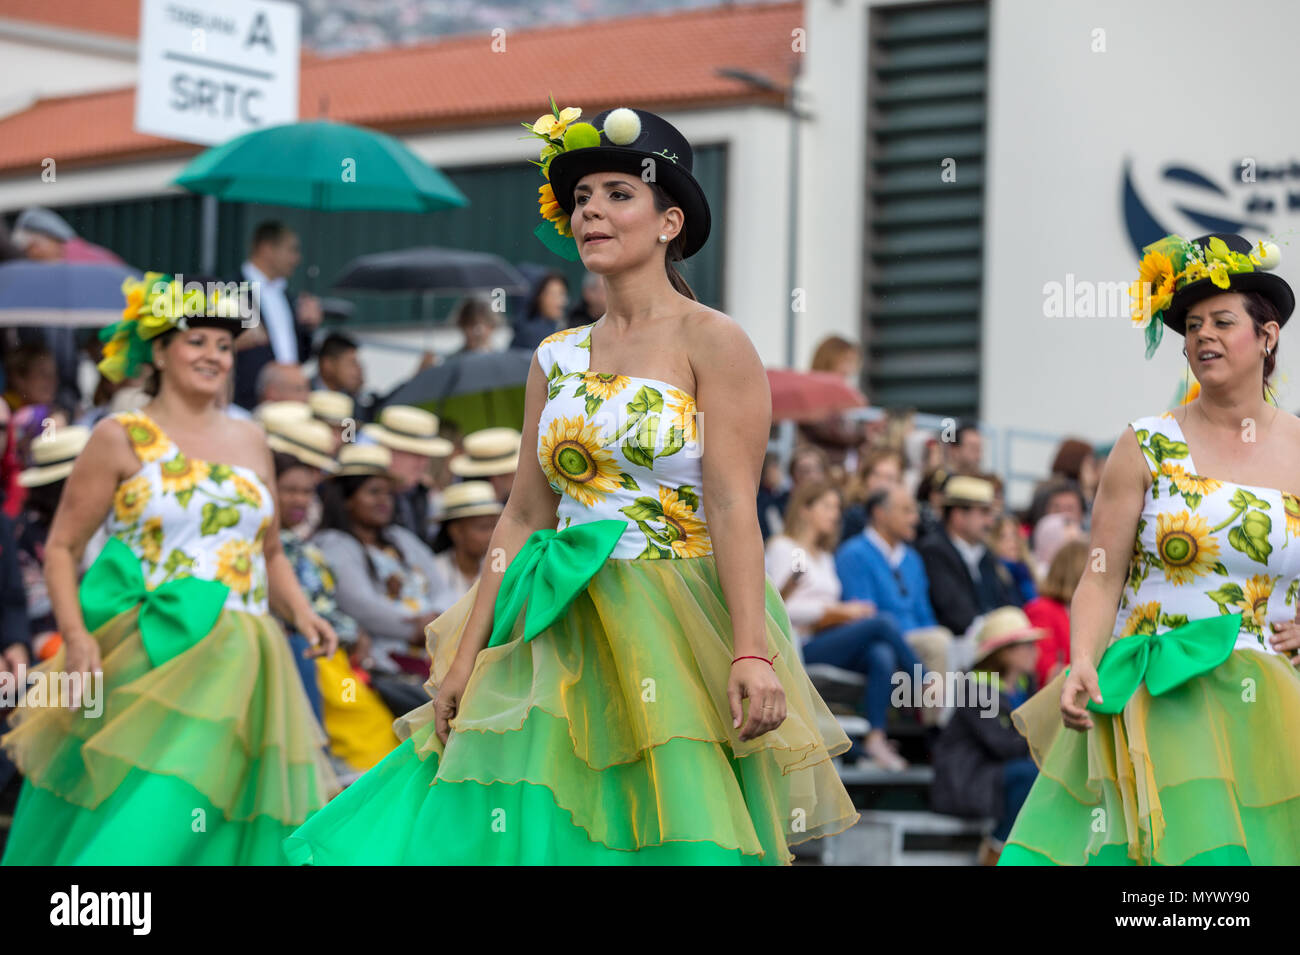 Grupo de mujeres jóvenes con vestidos floreados y sombrero en el Spring  Flower Festival de Funchal, isla de Madeira, Portugal Fotografía de stock -  Alamy